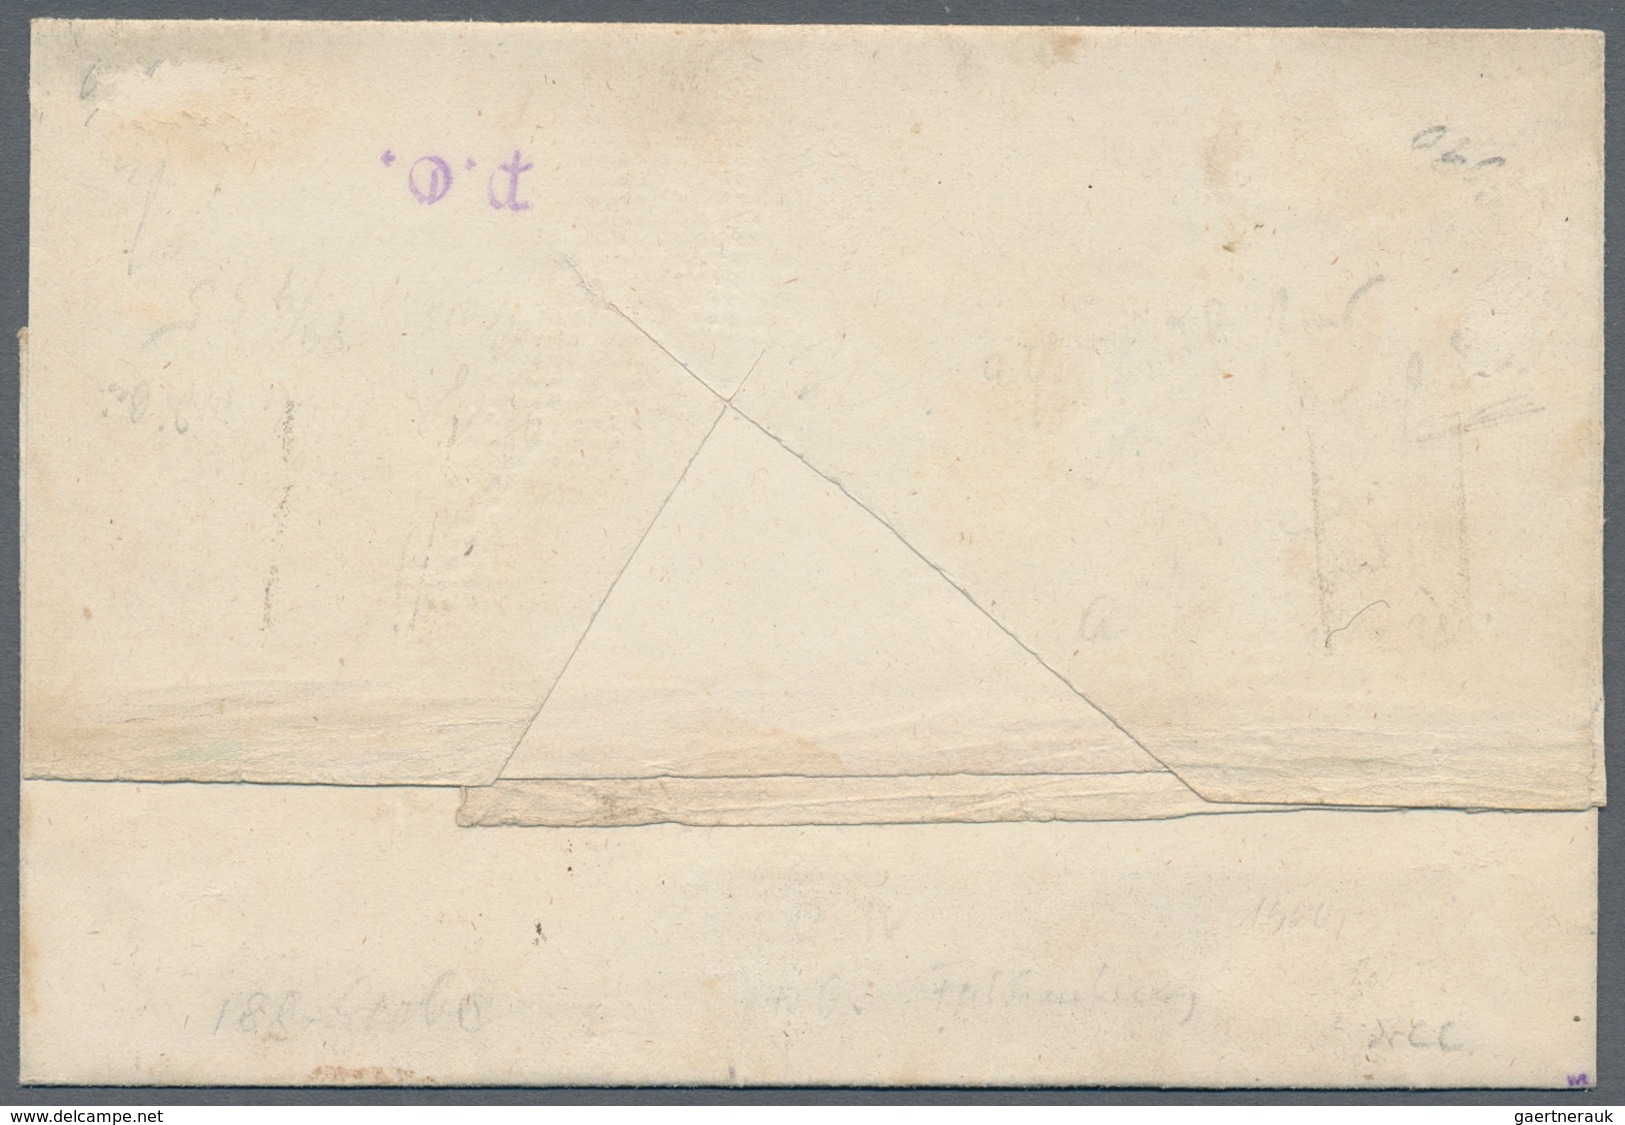 Oldenburg - Marken und Briefe: 1852, 1/30 Th. schwarz auf blau, vier Briefhüllen mit Einzelfrankatur